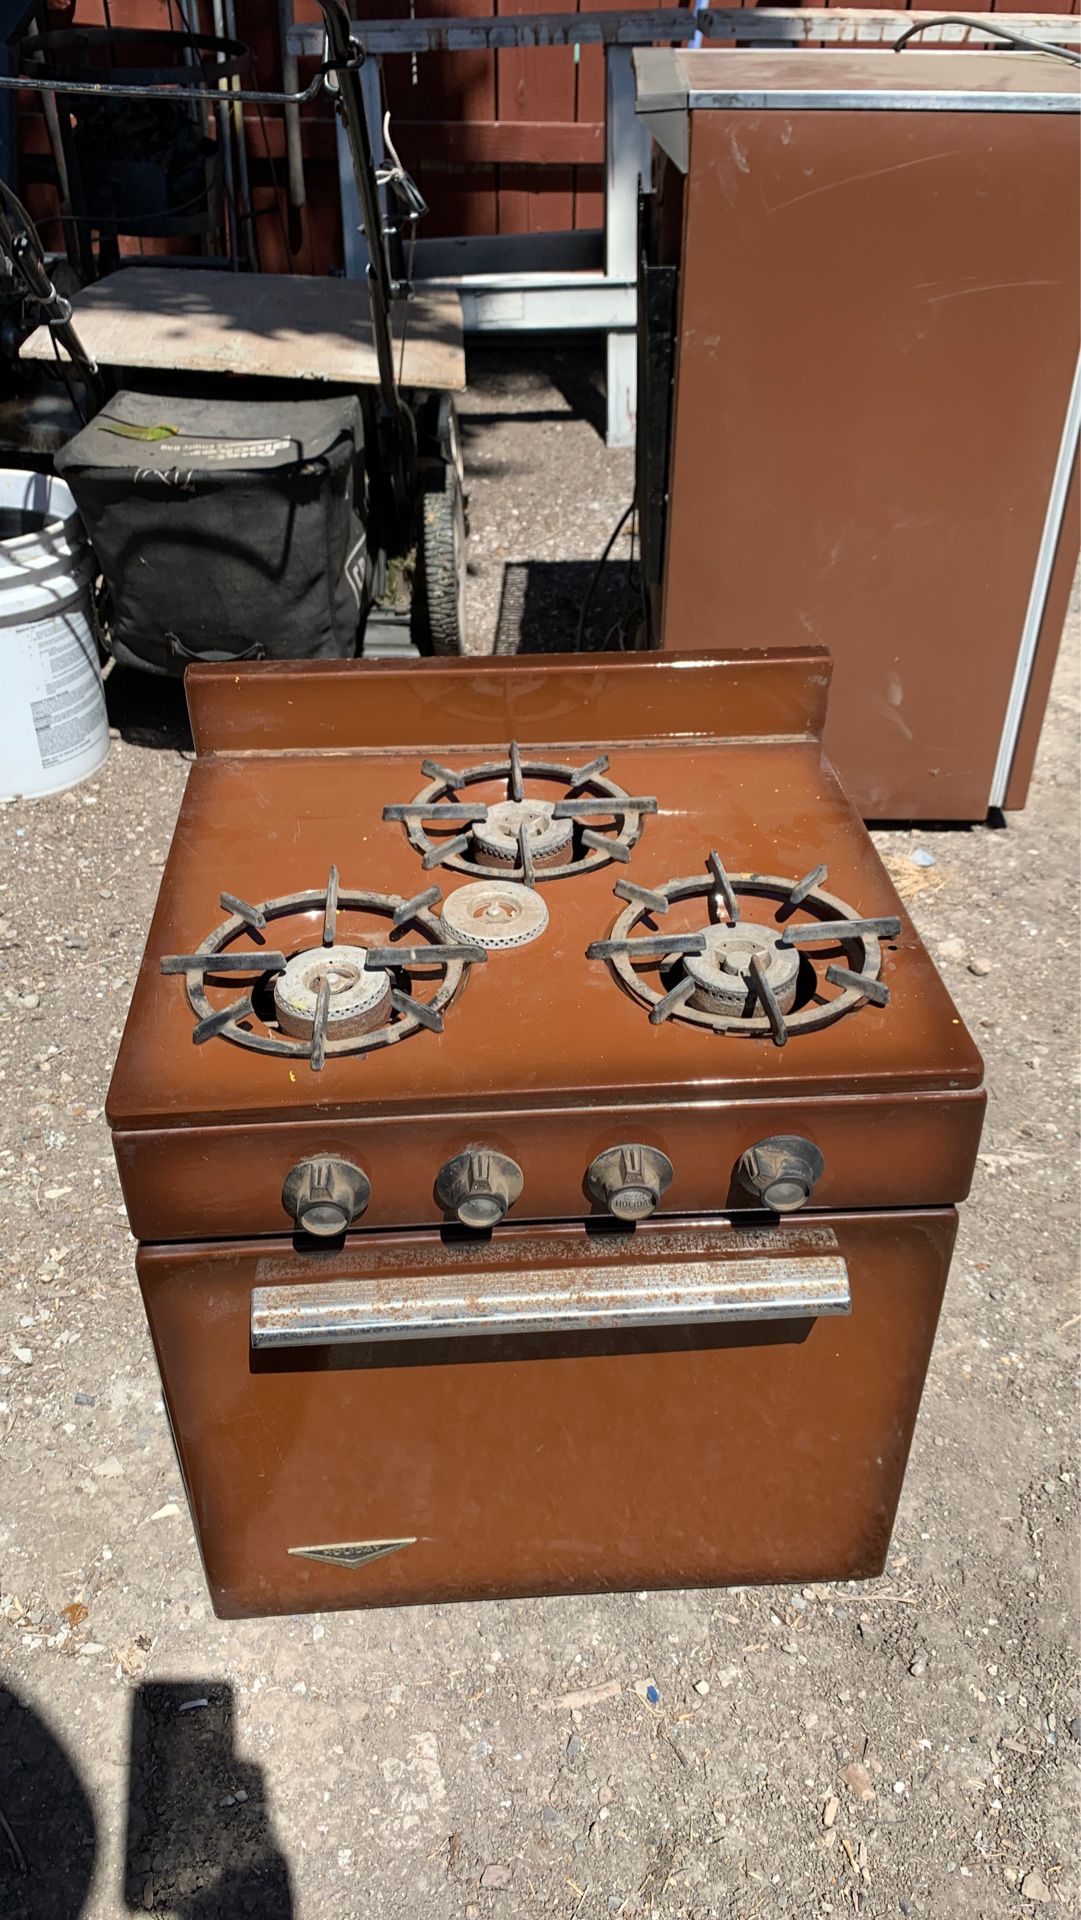 Vintage holiday camper stove